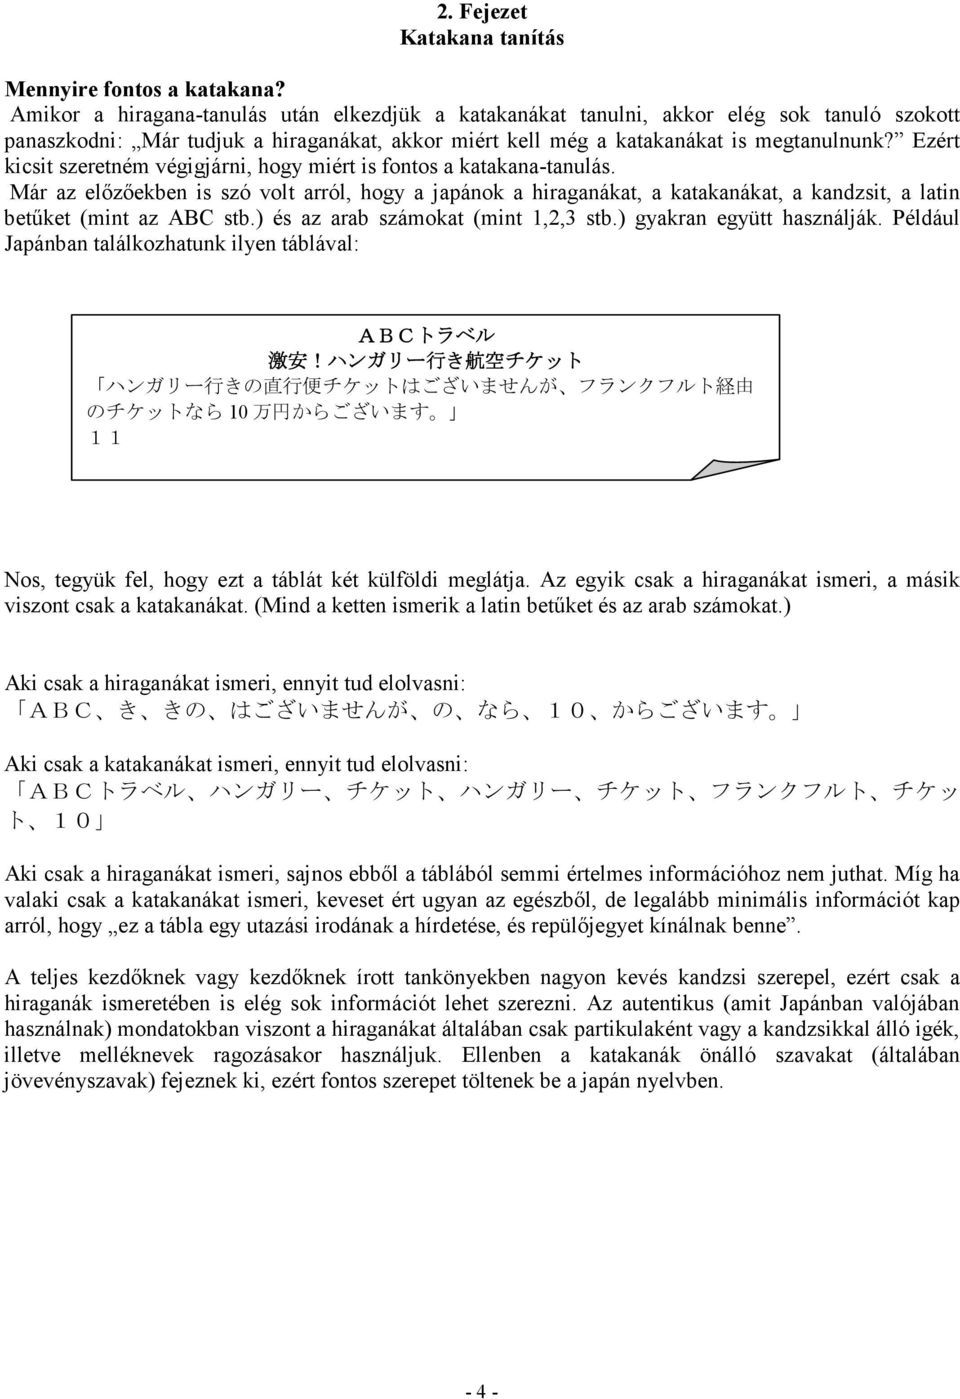 Ezért kicsit szeretném végigjárni, hogy miért is fontos a katakana-tanulás.